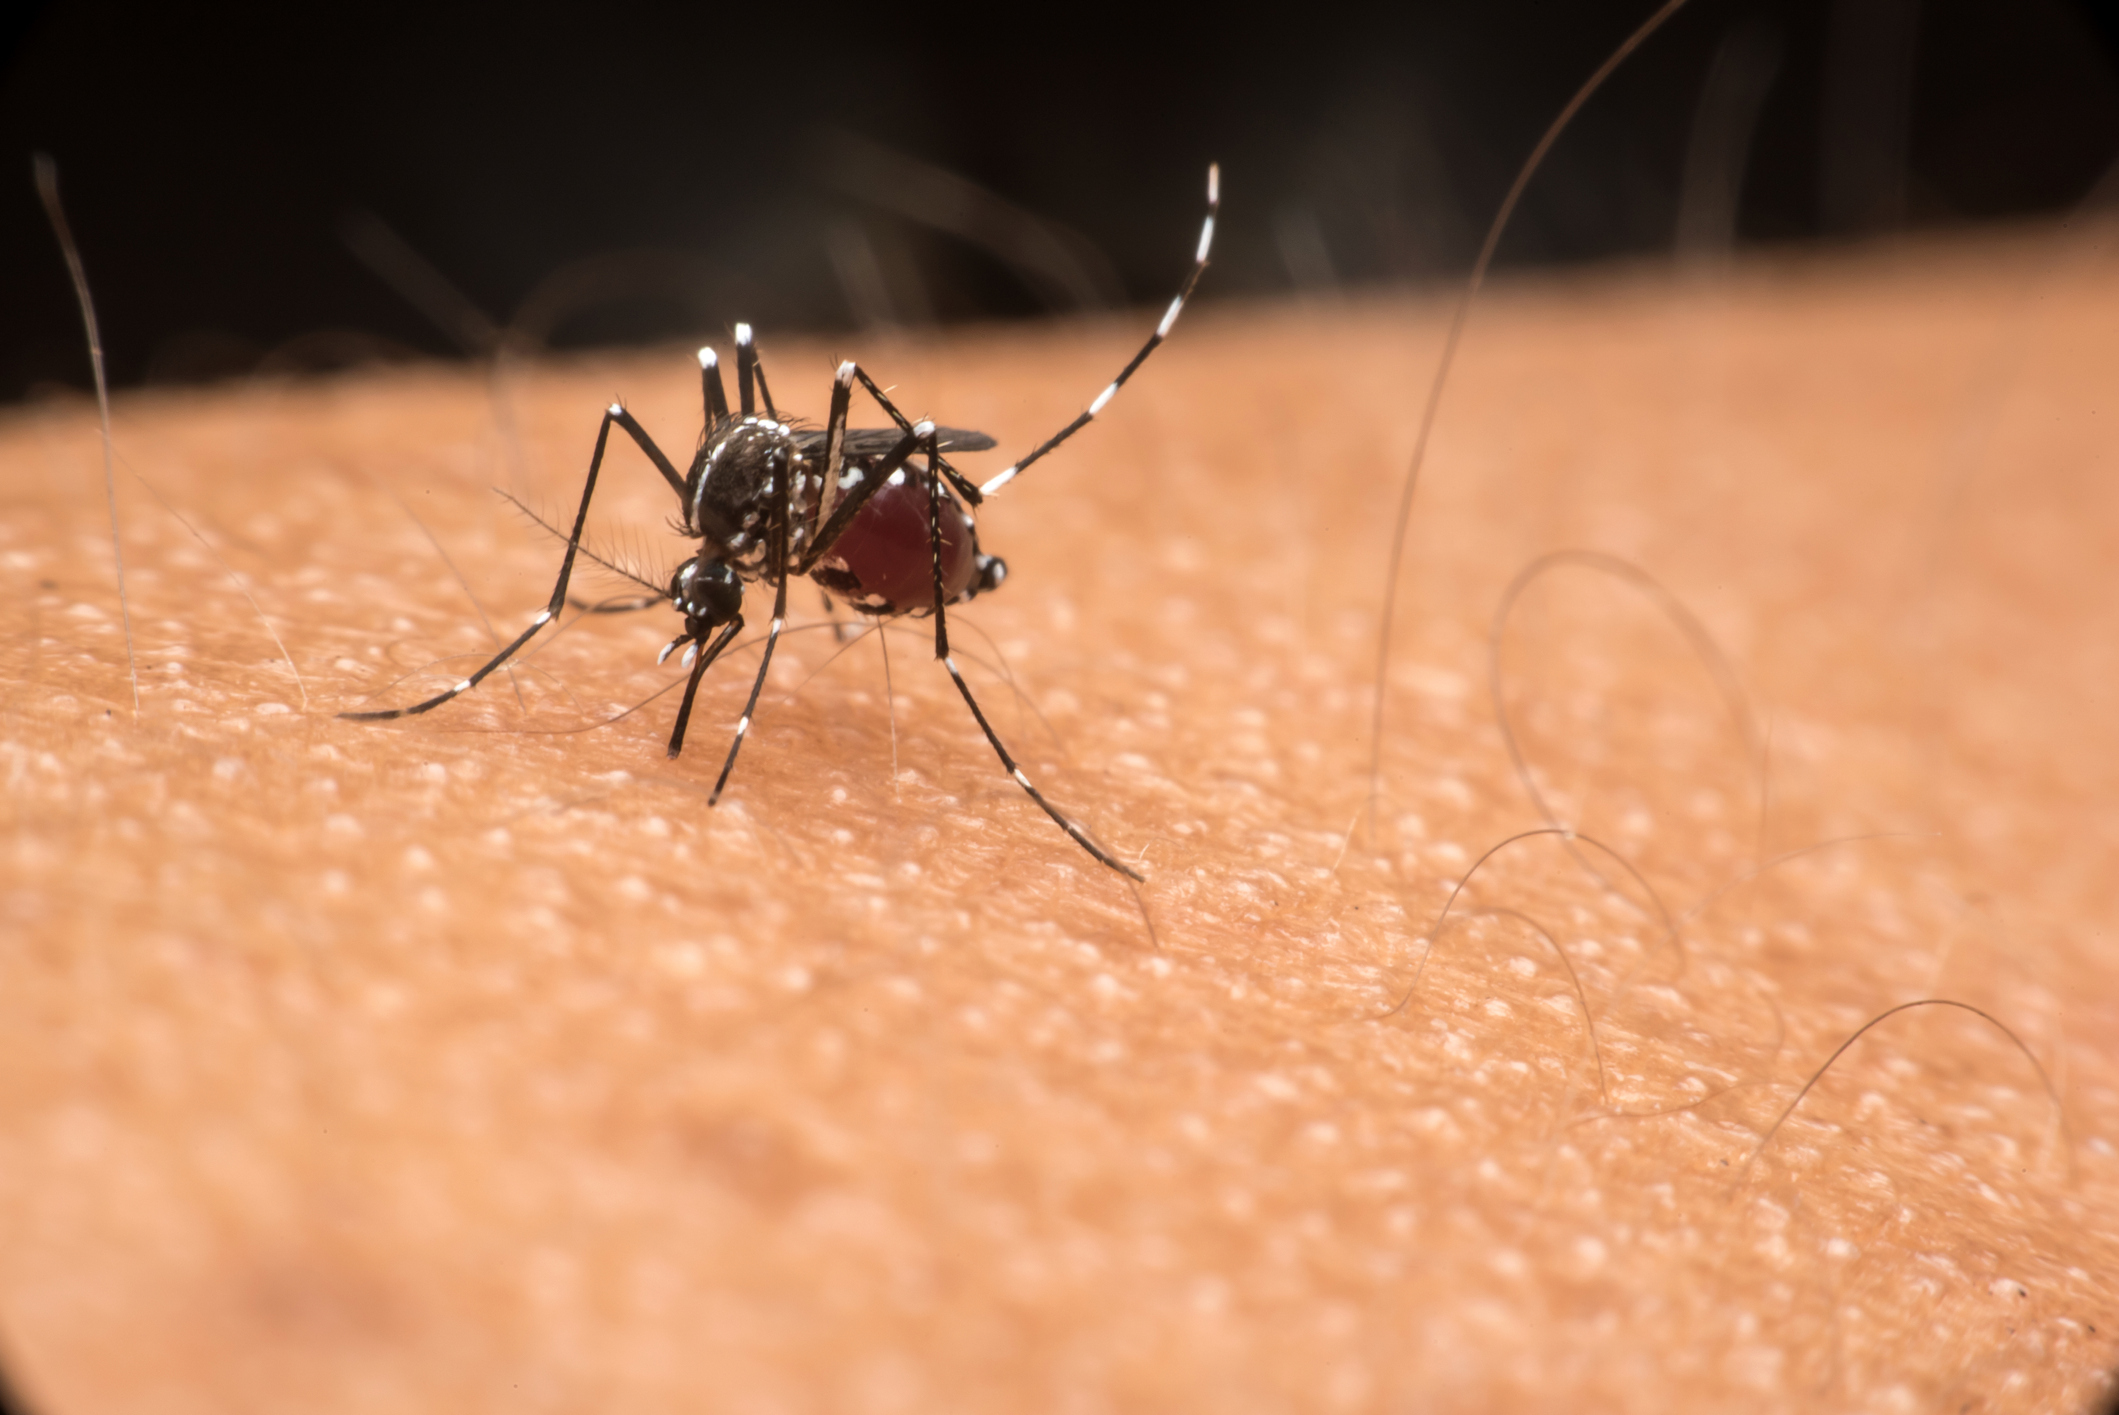 La hembra del zancudo Aedes aegypti, que transmite dengue, zika y chikunguña, deposita sus huevos en lugares donde se almacena el agua limpia. (Getty Images)